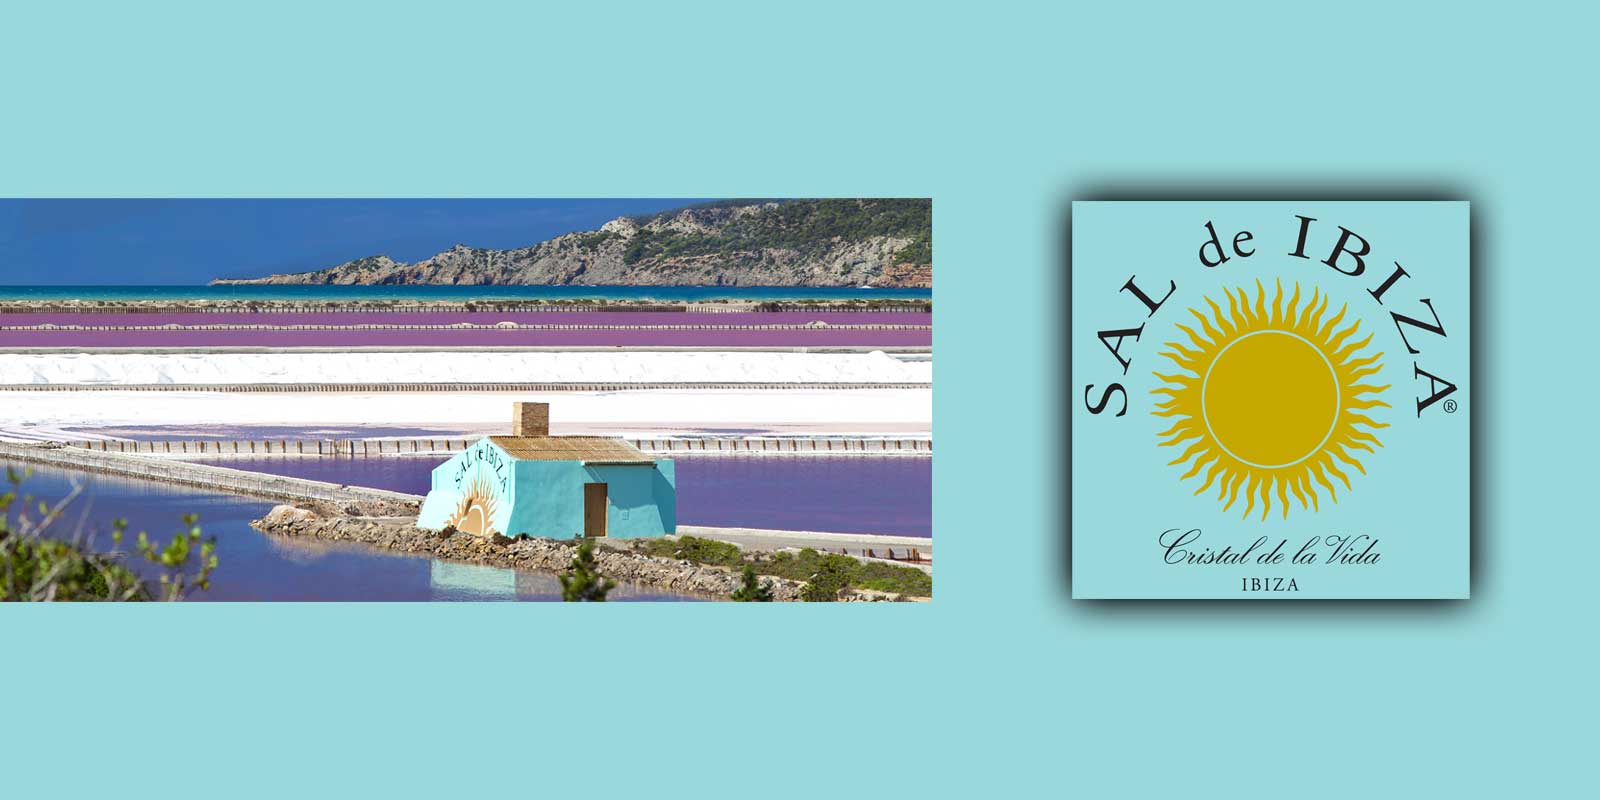 SAL d`EIVISSA La Flor de Sal s`obte a les reserves naturals de les salines d`Eivissa. Els petits i fragils cristalls nomes es formen quan hi ha molt sol, poca humitat i vent constant.